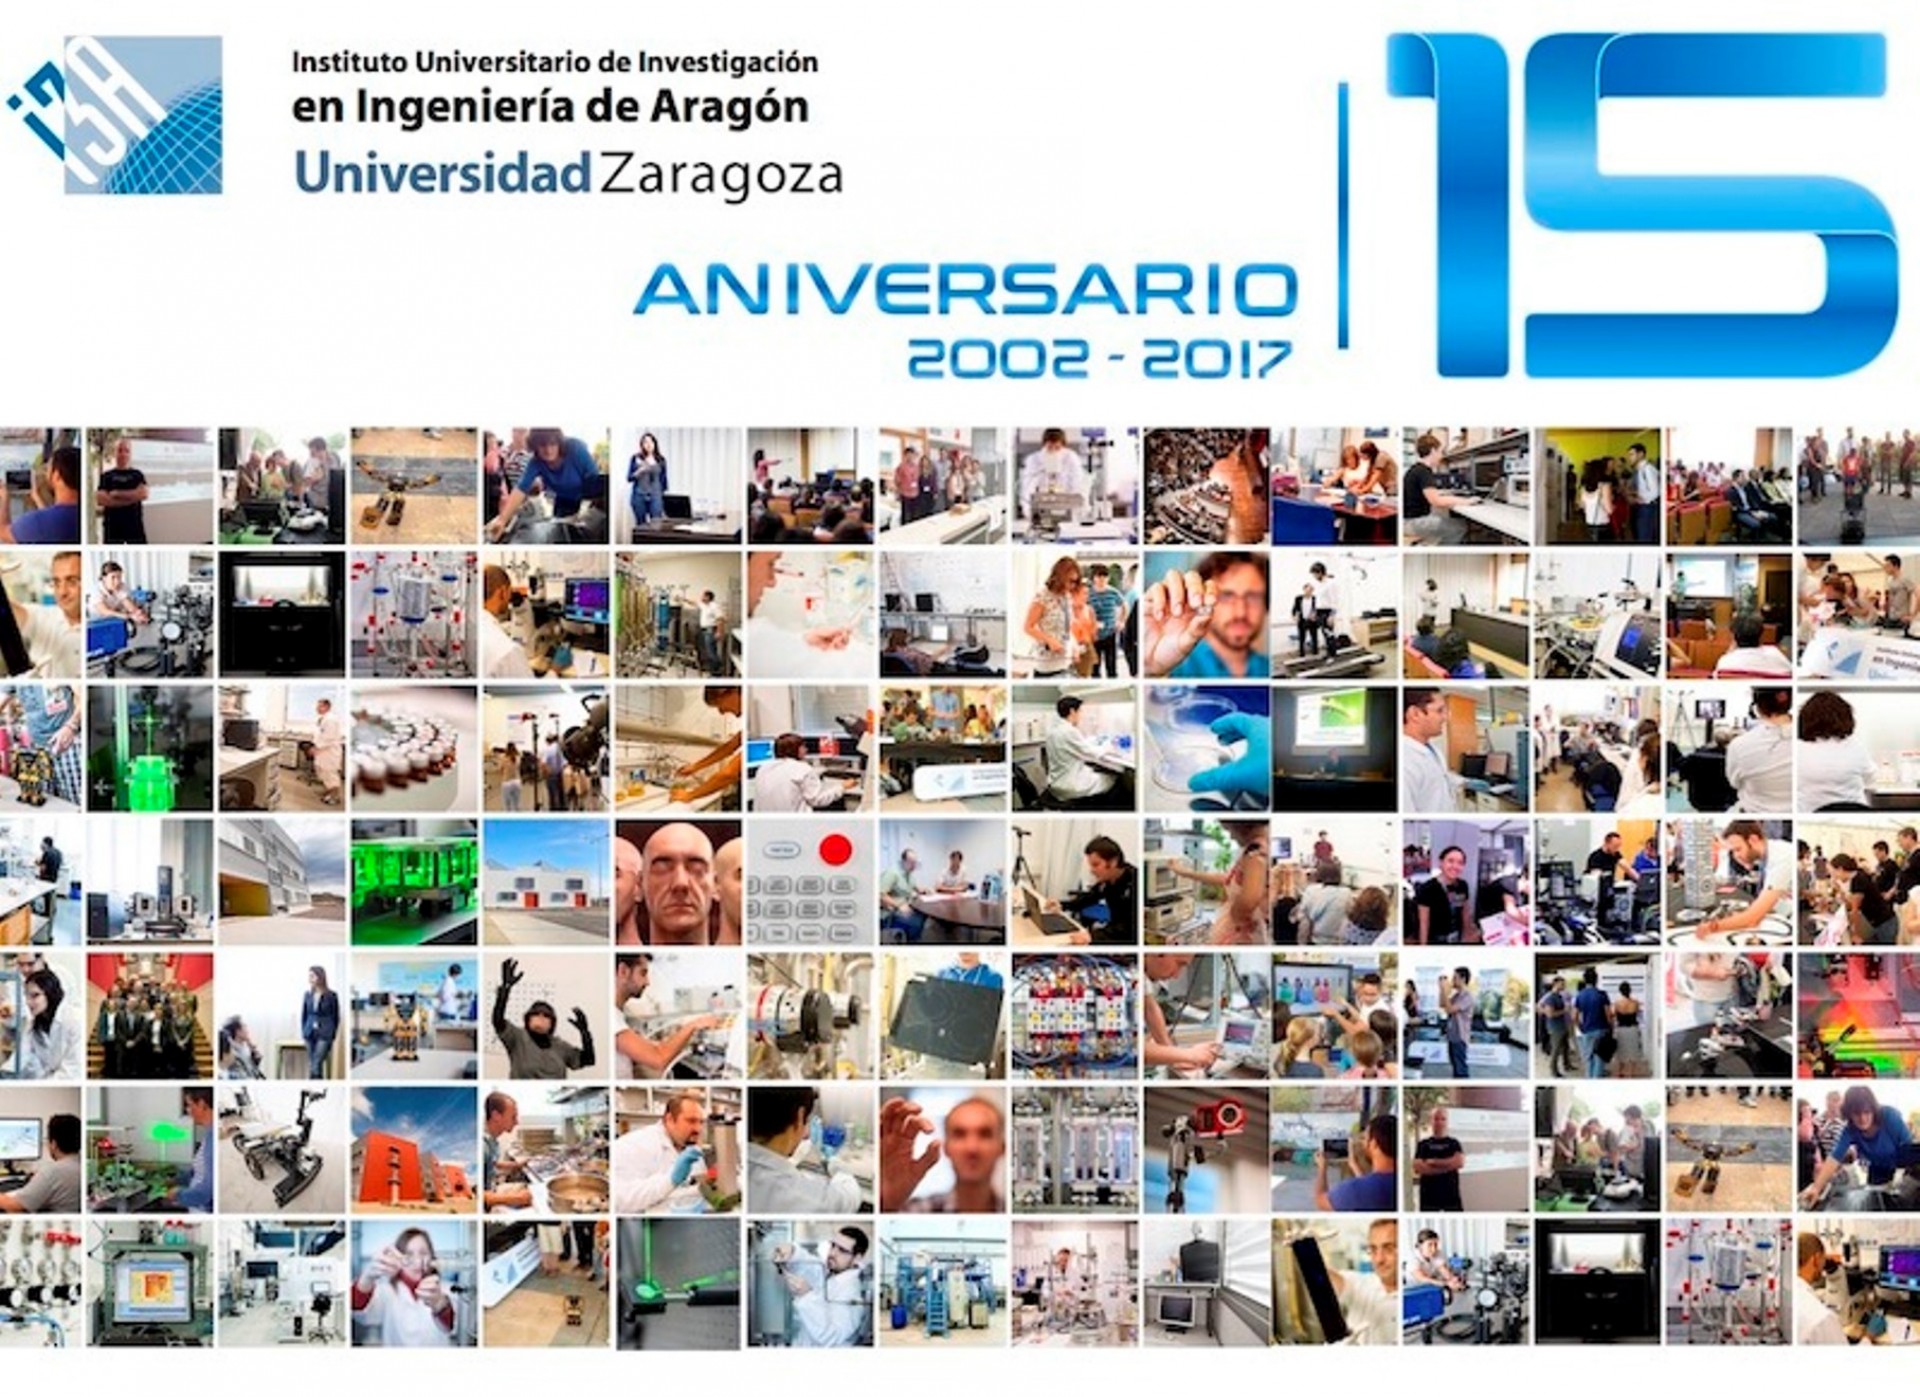 El I3A CUMPLE 15 AÑOS: casi 500 investigadores, 35 grupos de investigación y más de 100 líneas de trabajo al servicio de la sociedad